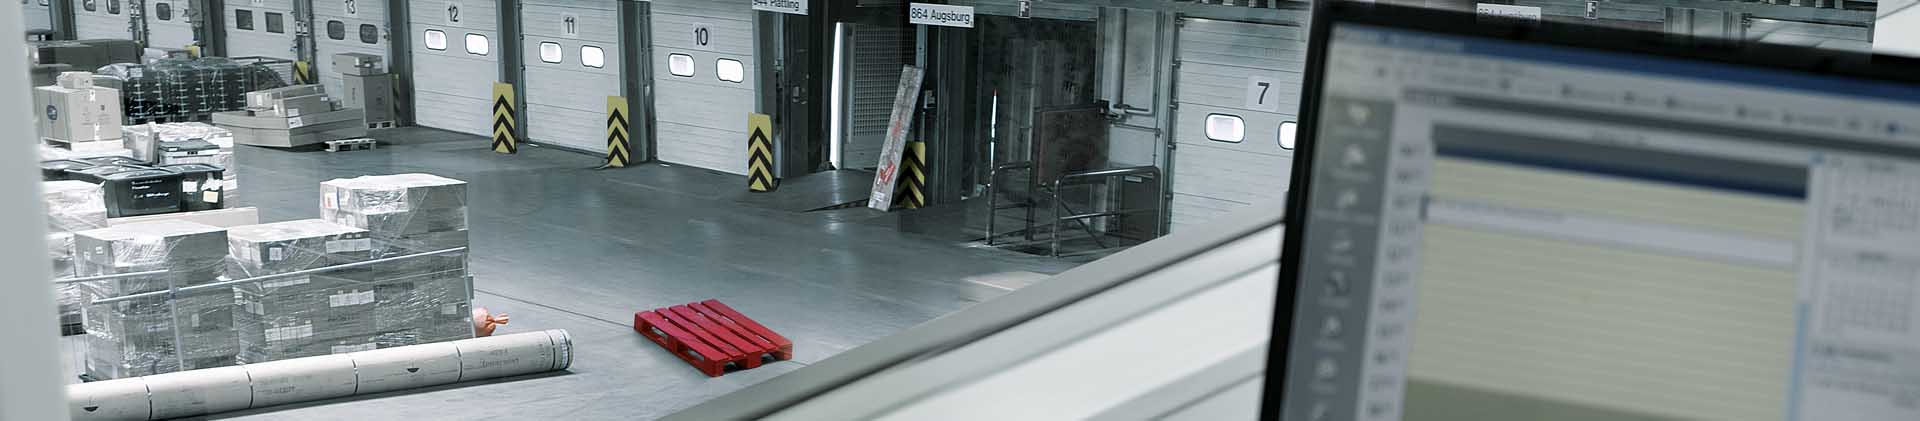 Umschlaghalle der Stückgutkooperation CargoLine mit roter Palette und Kalender für eine Zustellung mit Uhrzeitoption